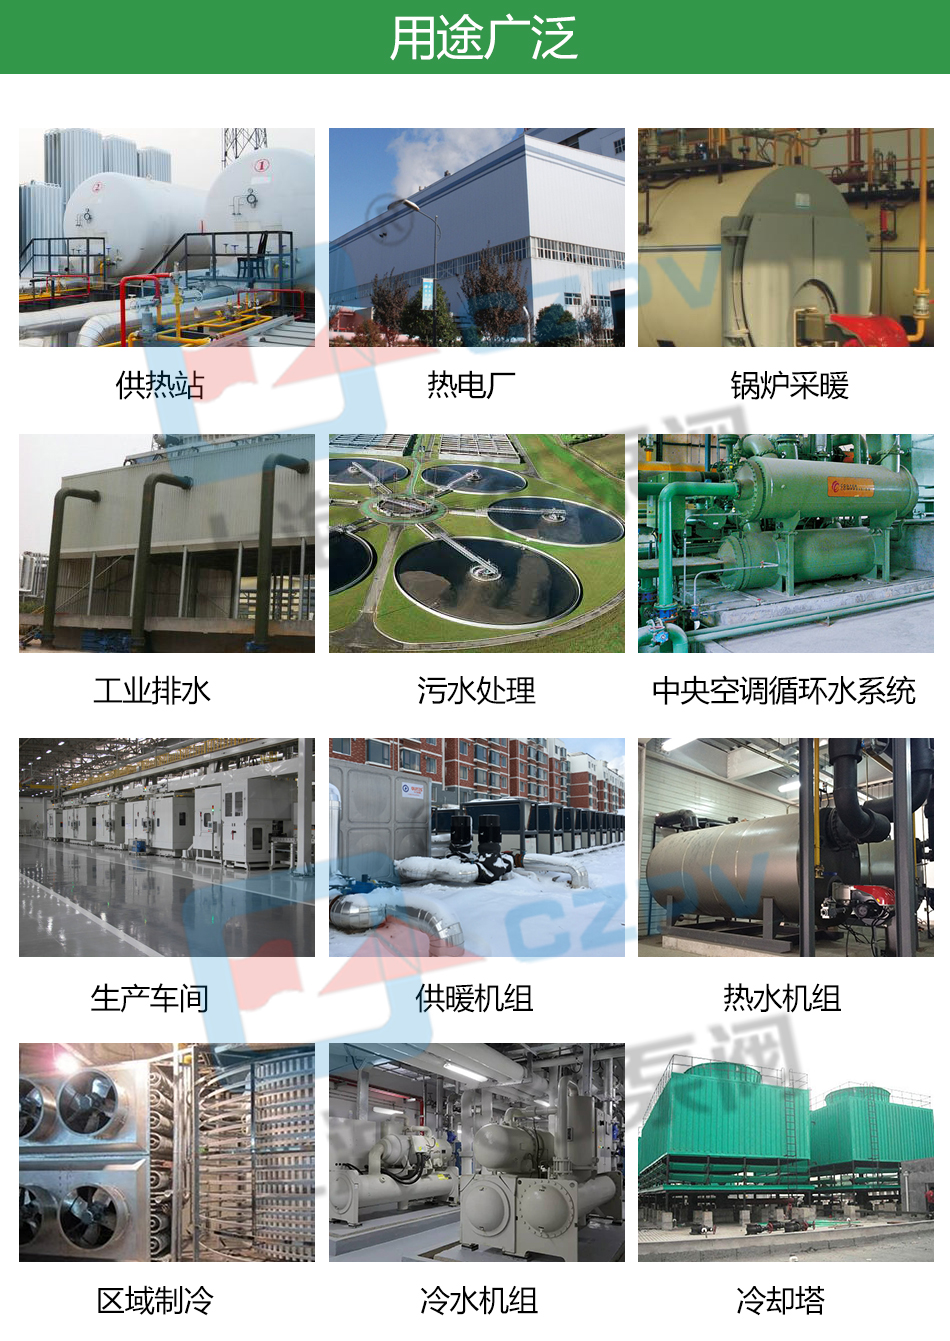 ltp立式高效节能循环水泵产品用途图片